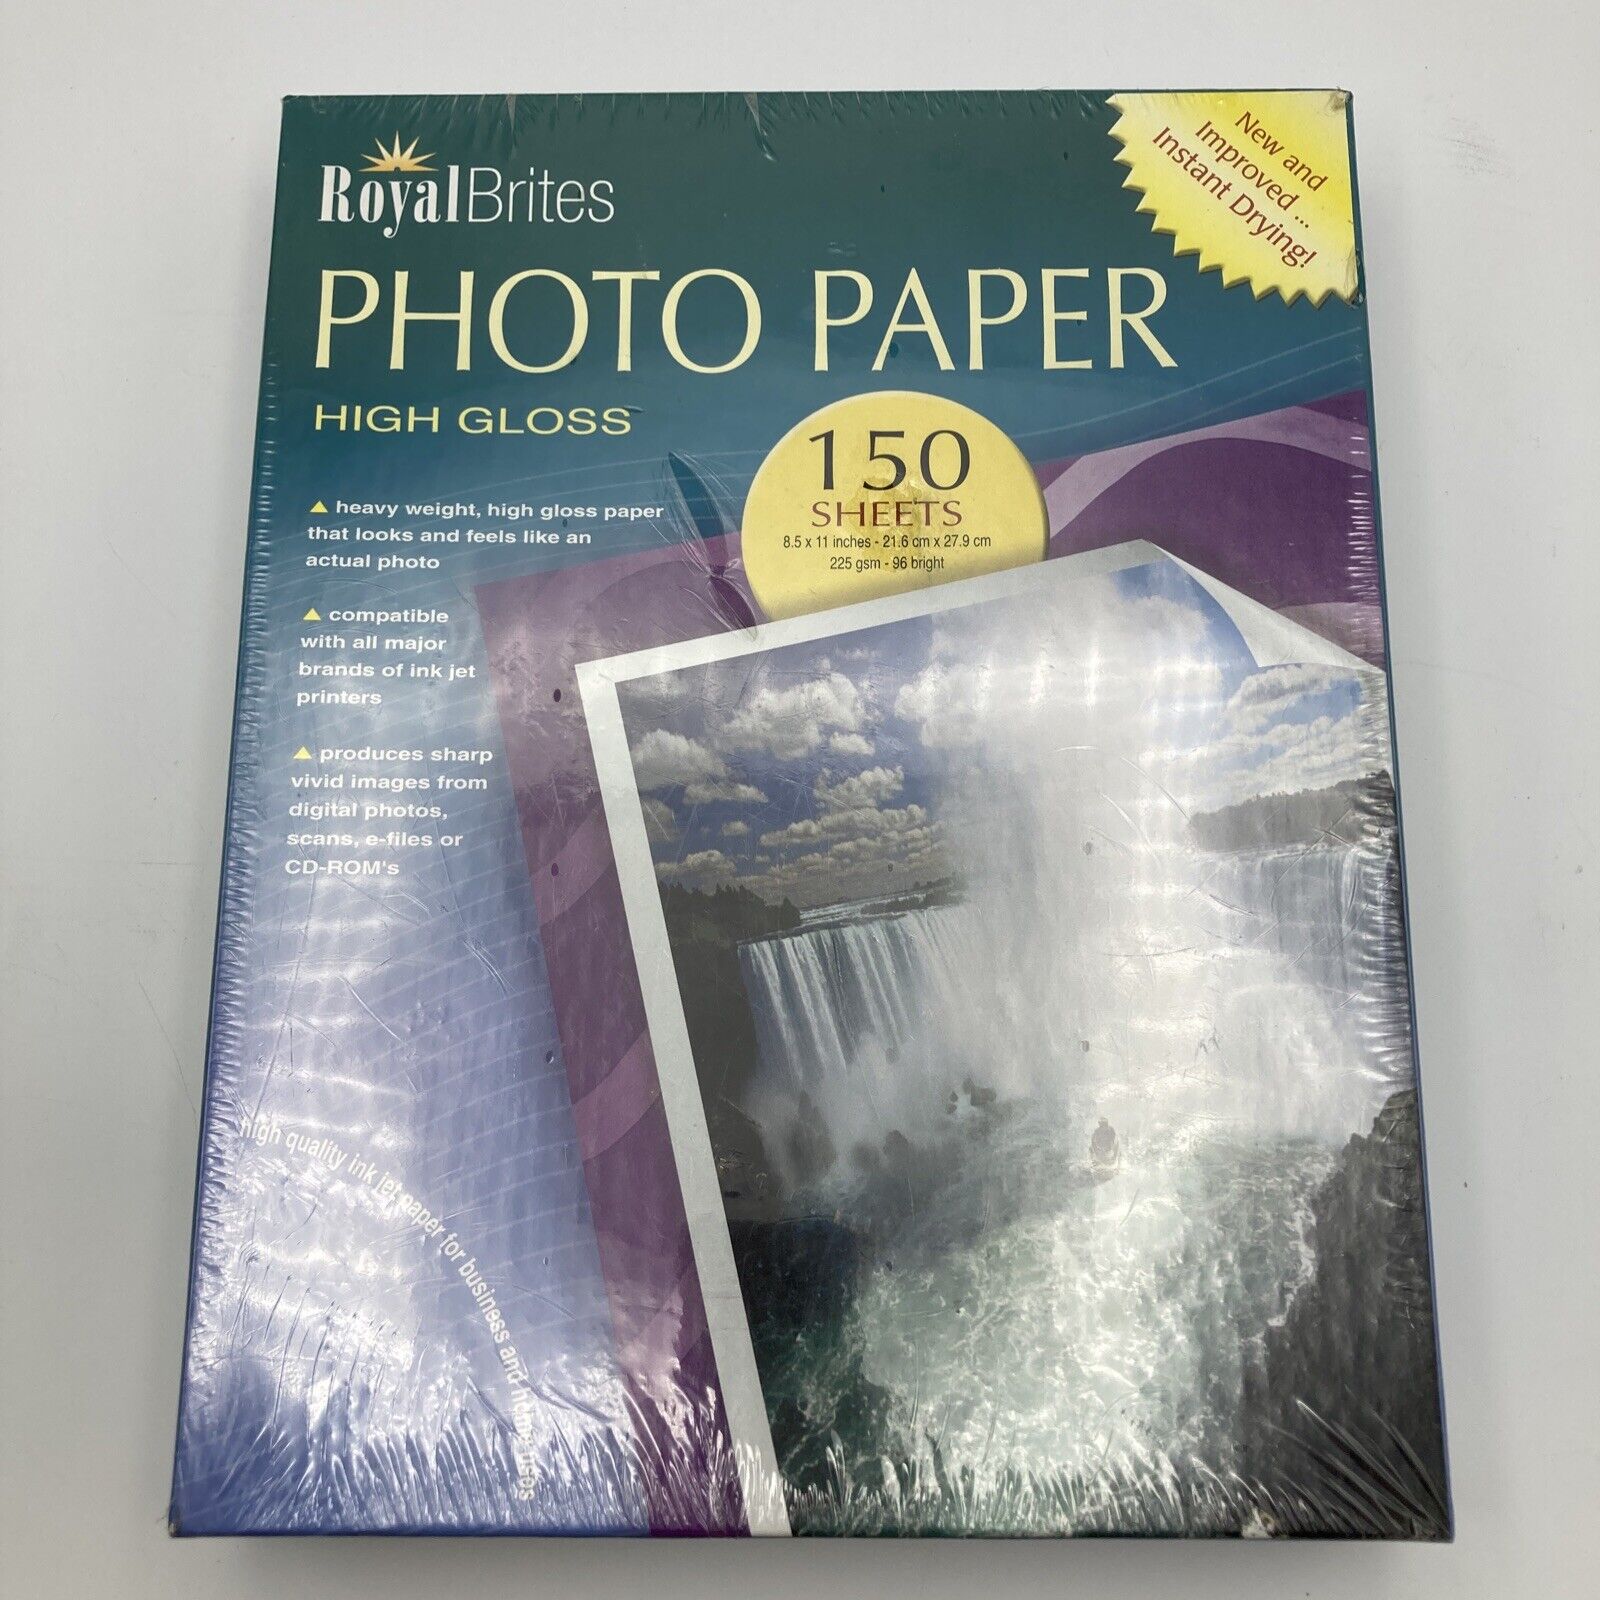 SEALED NEW Royal Brites Photo Paper High Gloss 150 Sheets